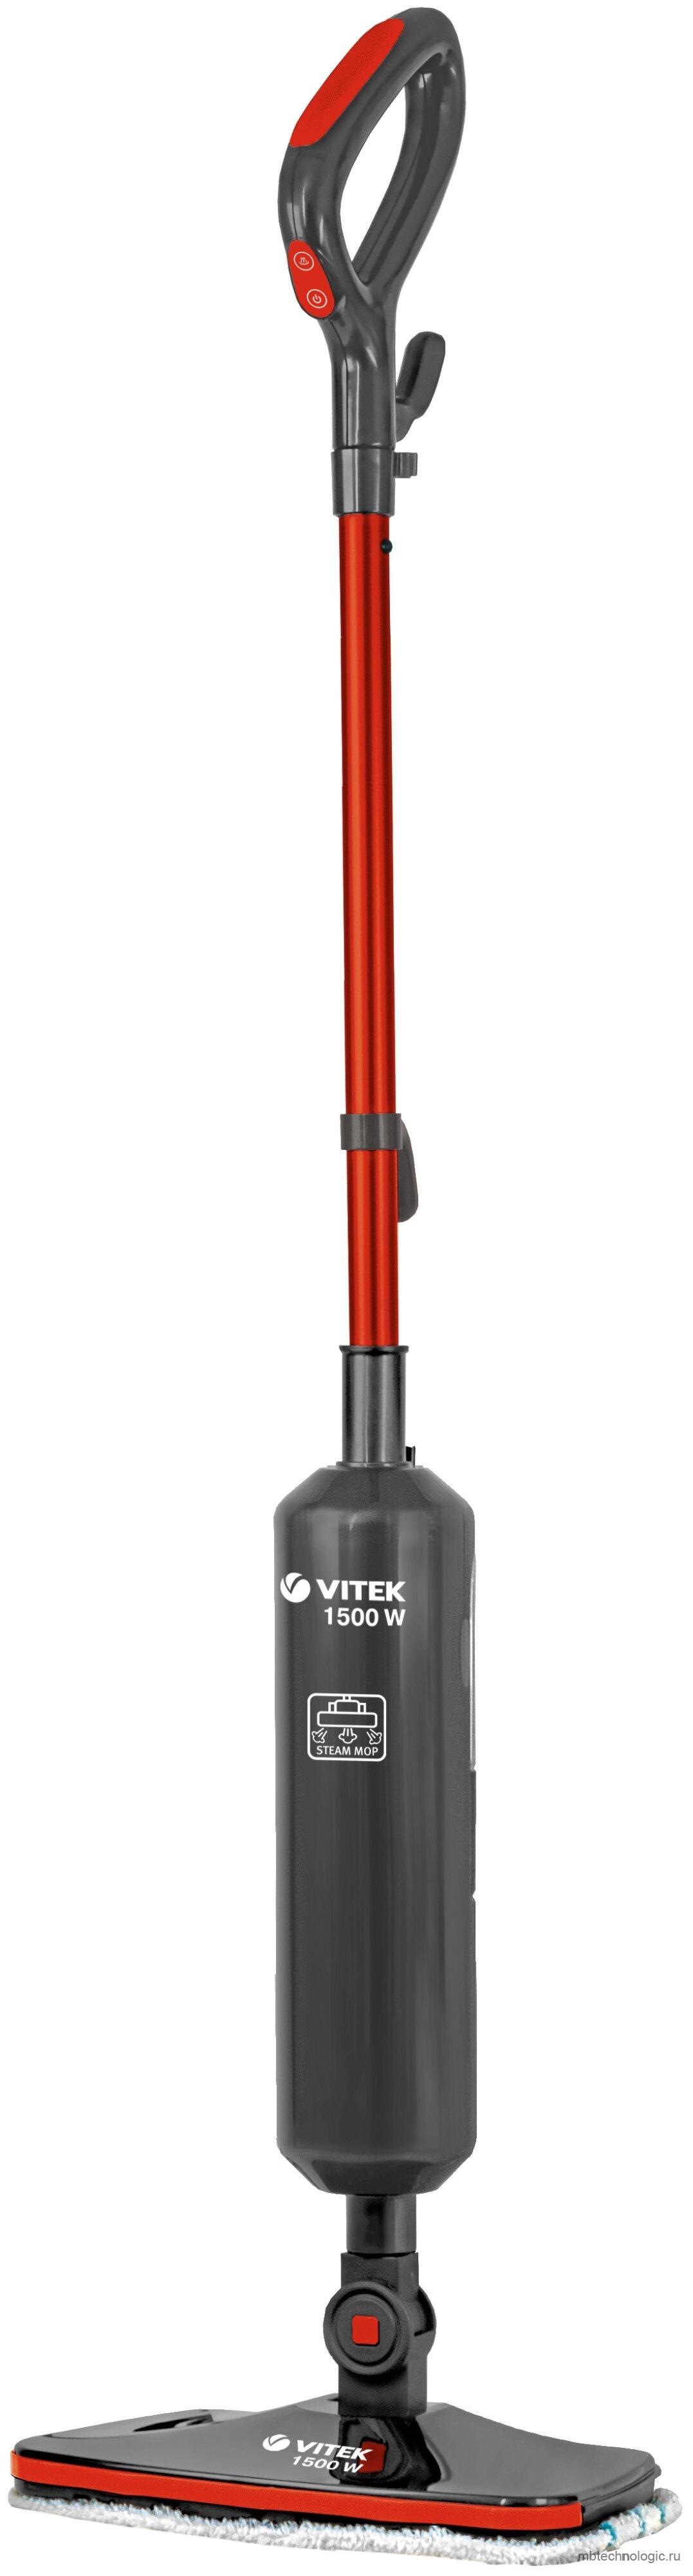 Vitek VT-8188